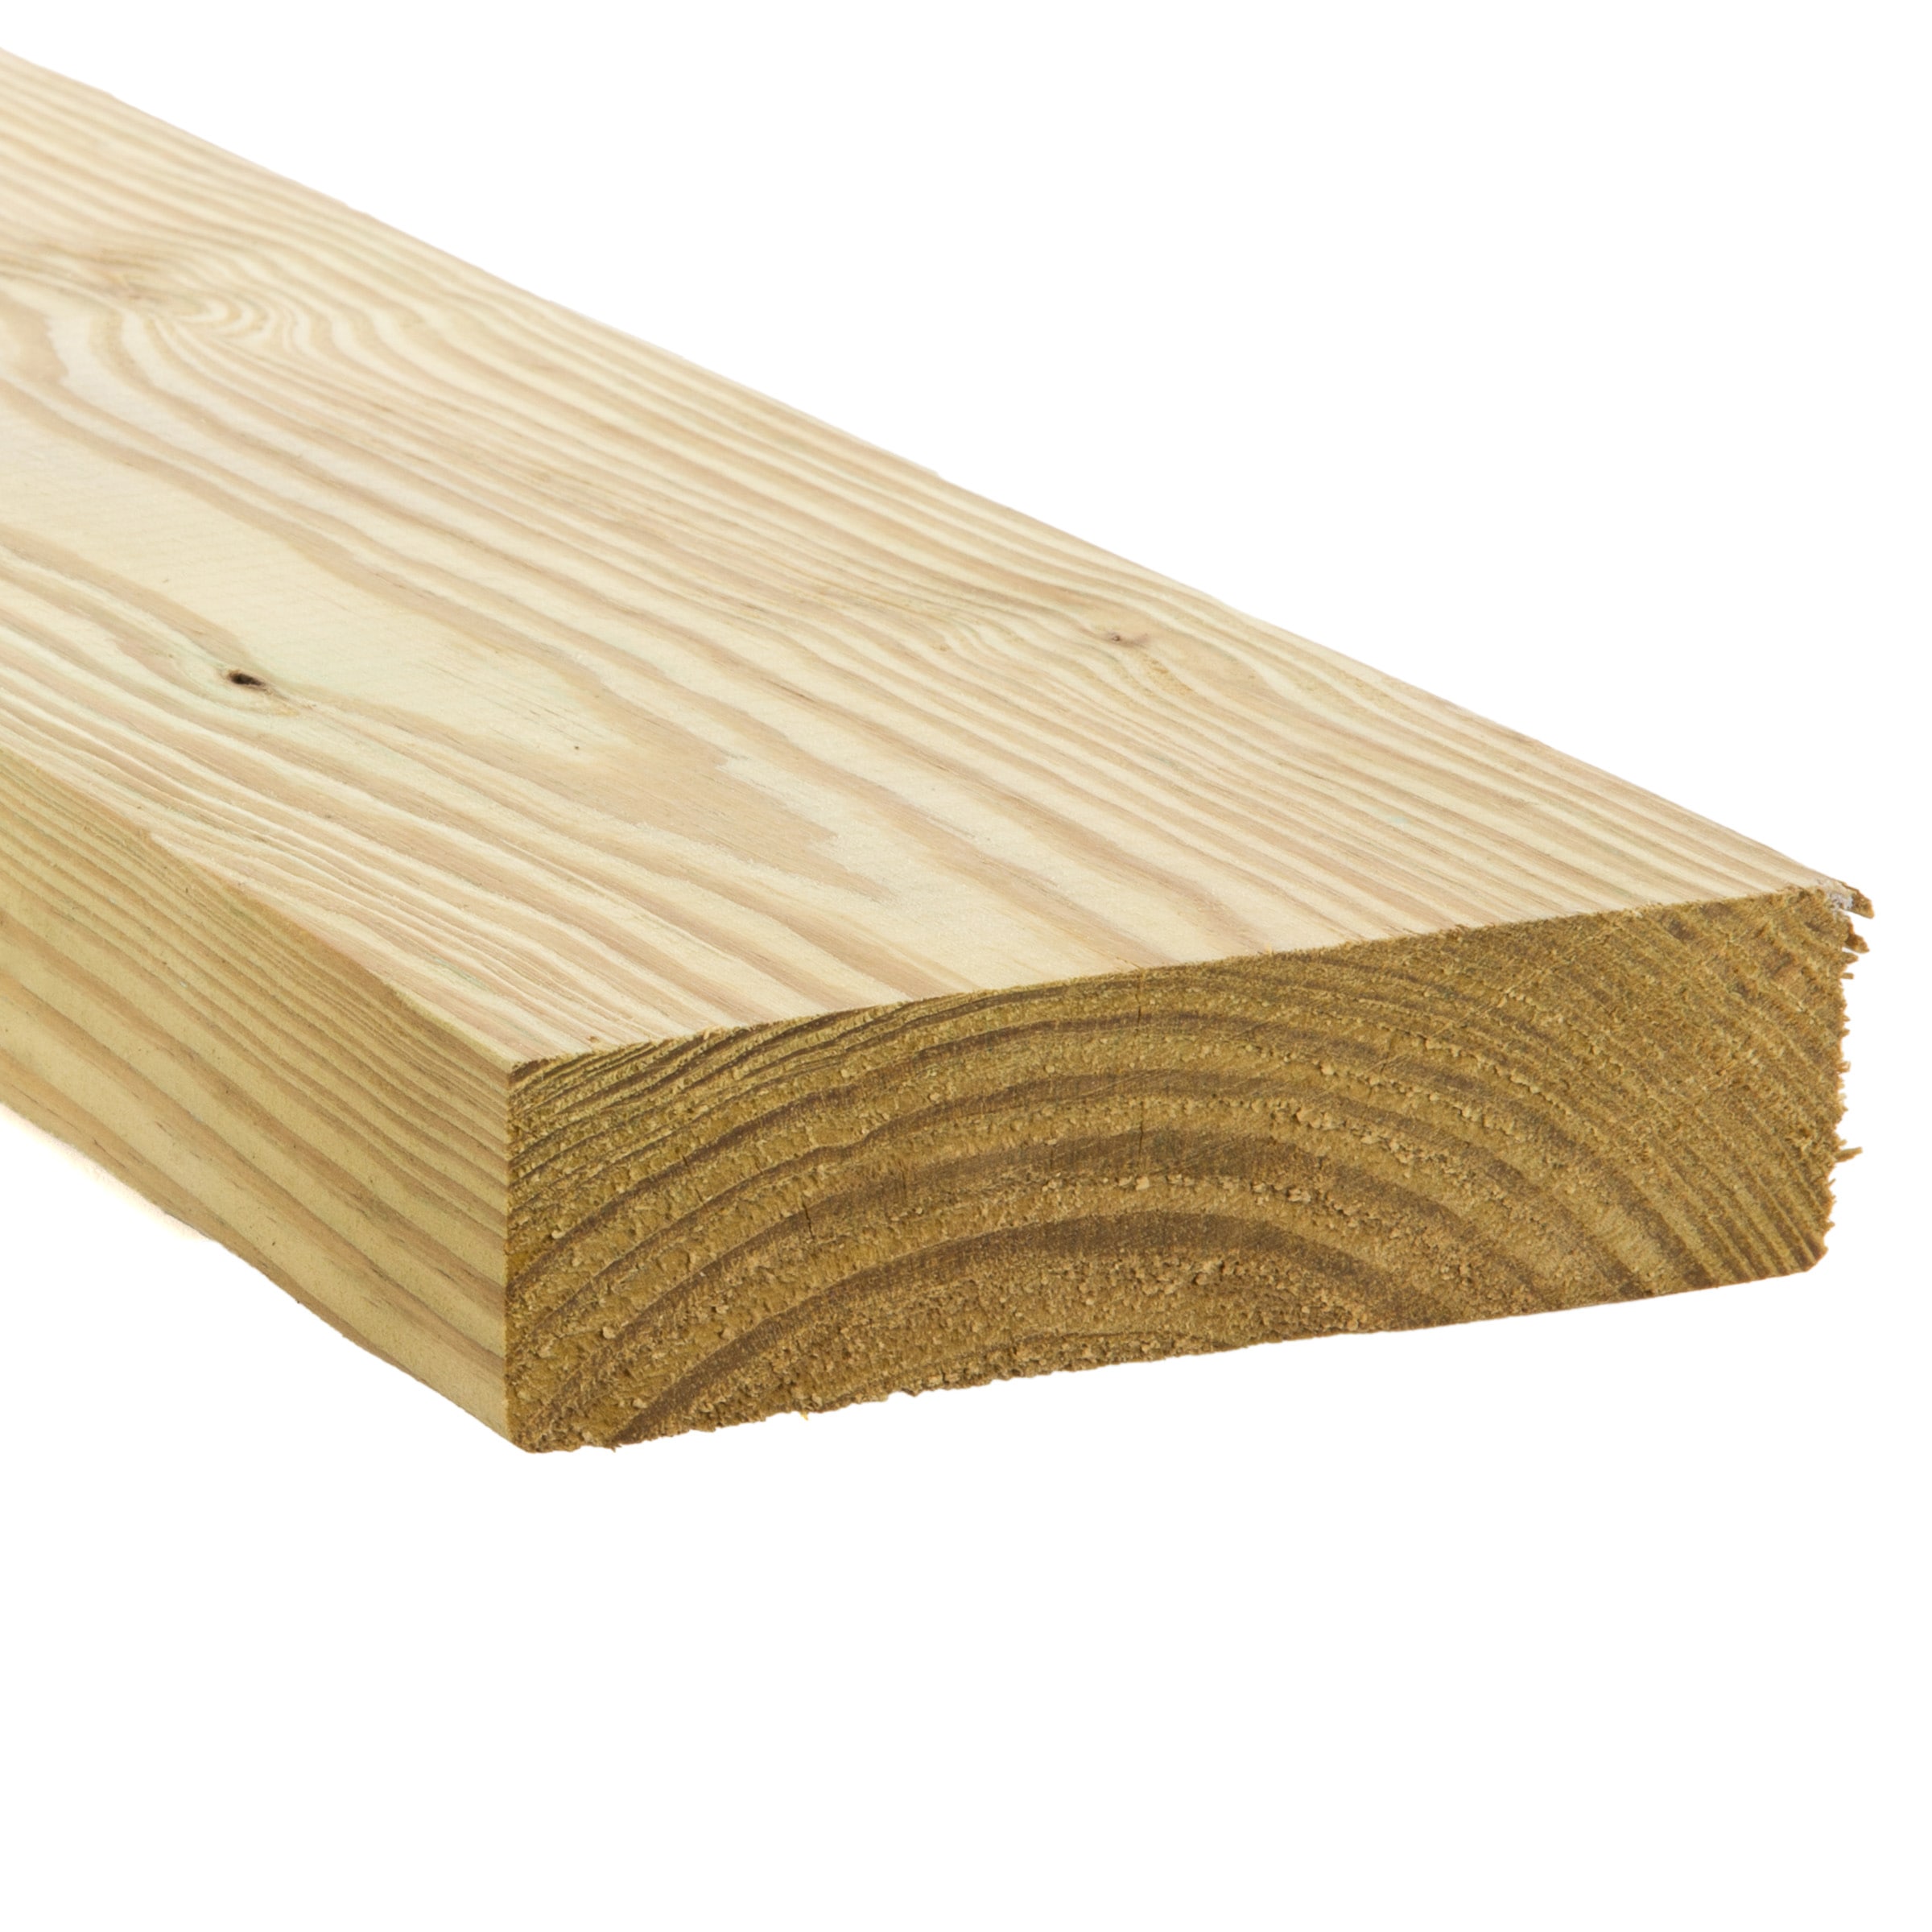 Swaner Hardwood 2 in. x 4 in. x 8 ft. Red Oak S4S Board